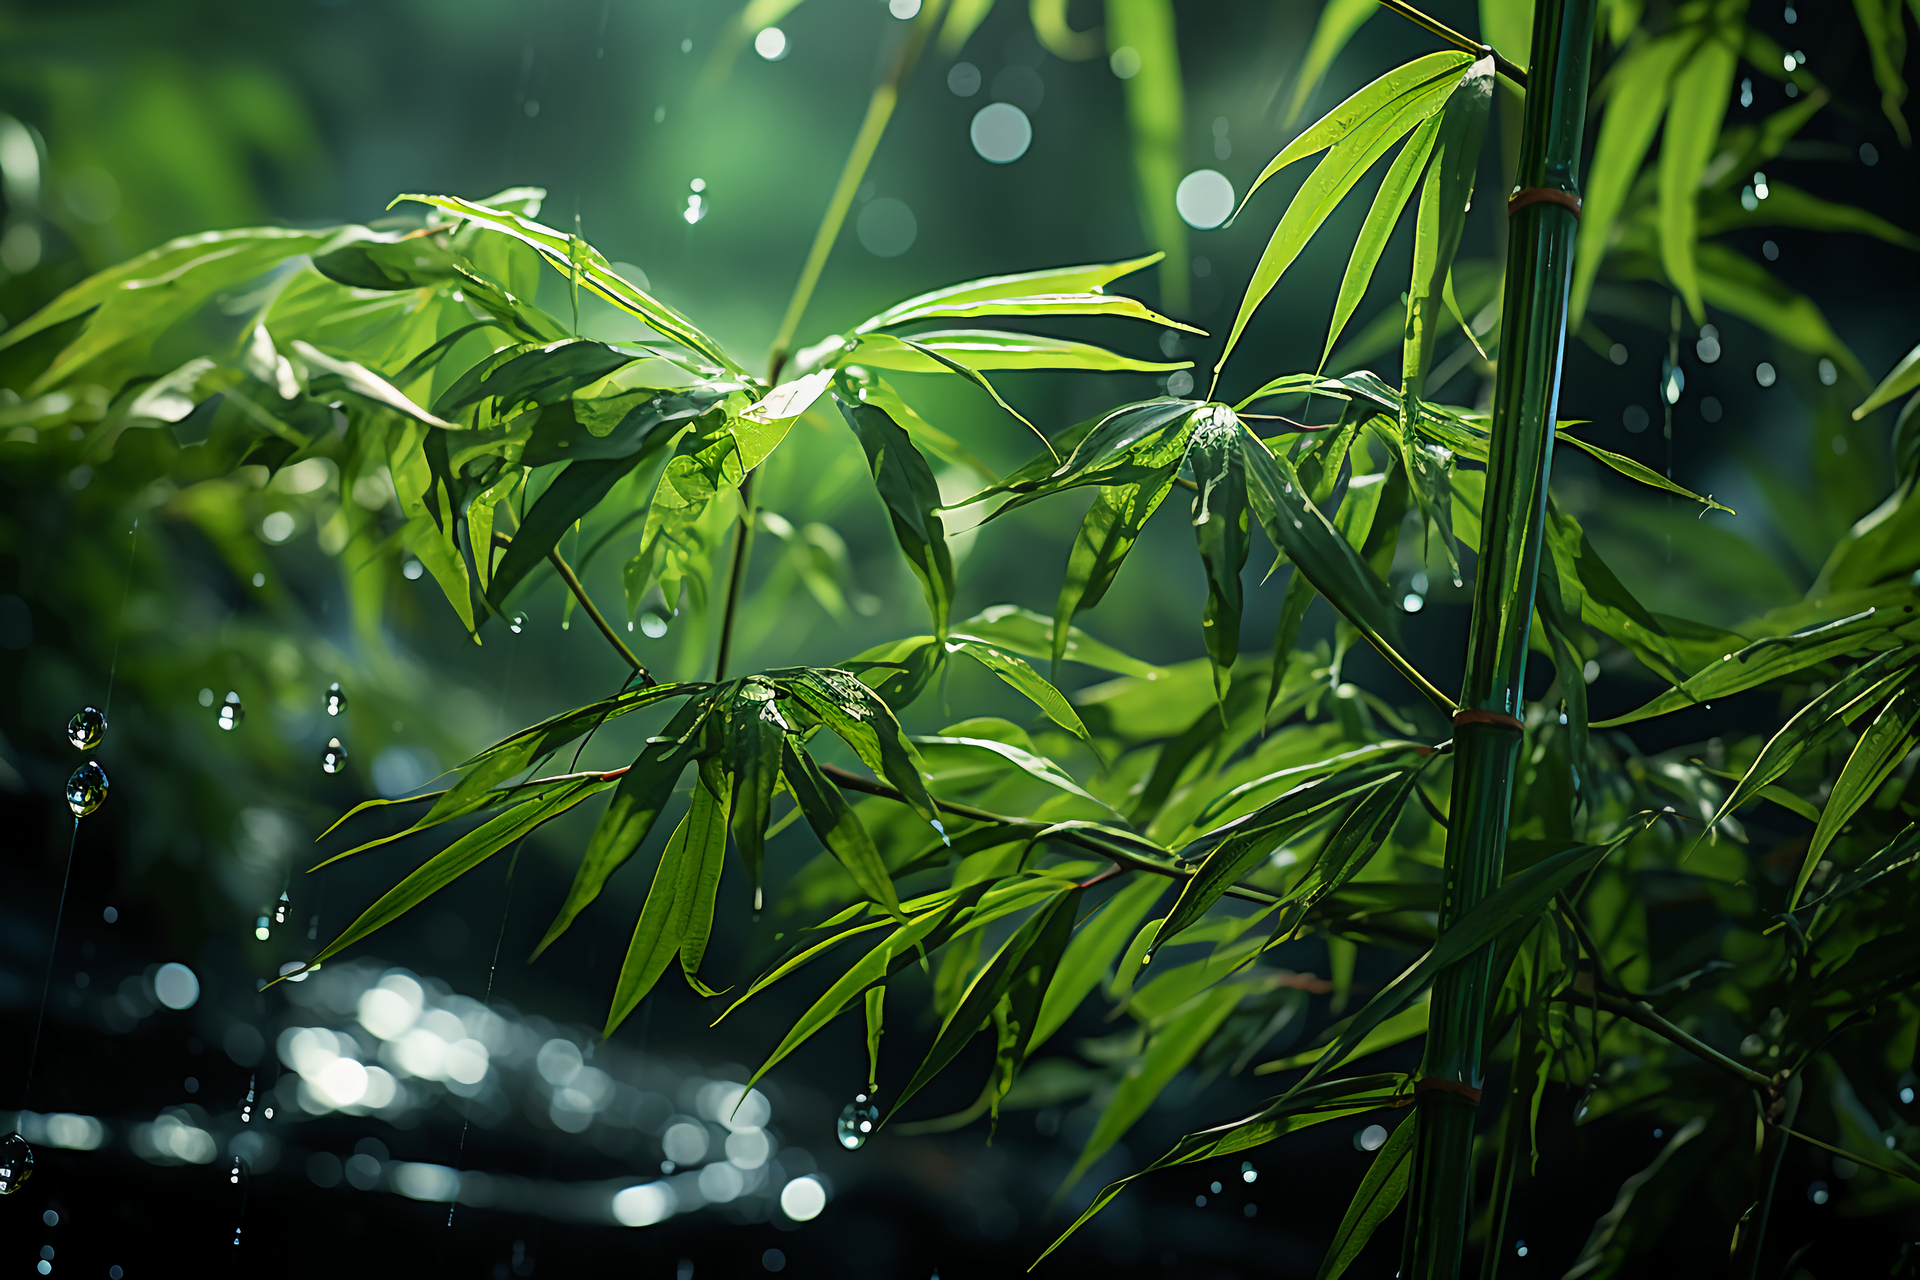 Piękny bambus parasolowaty, otoczony deszczem, który dodaje mu jeszcze więcej uroku